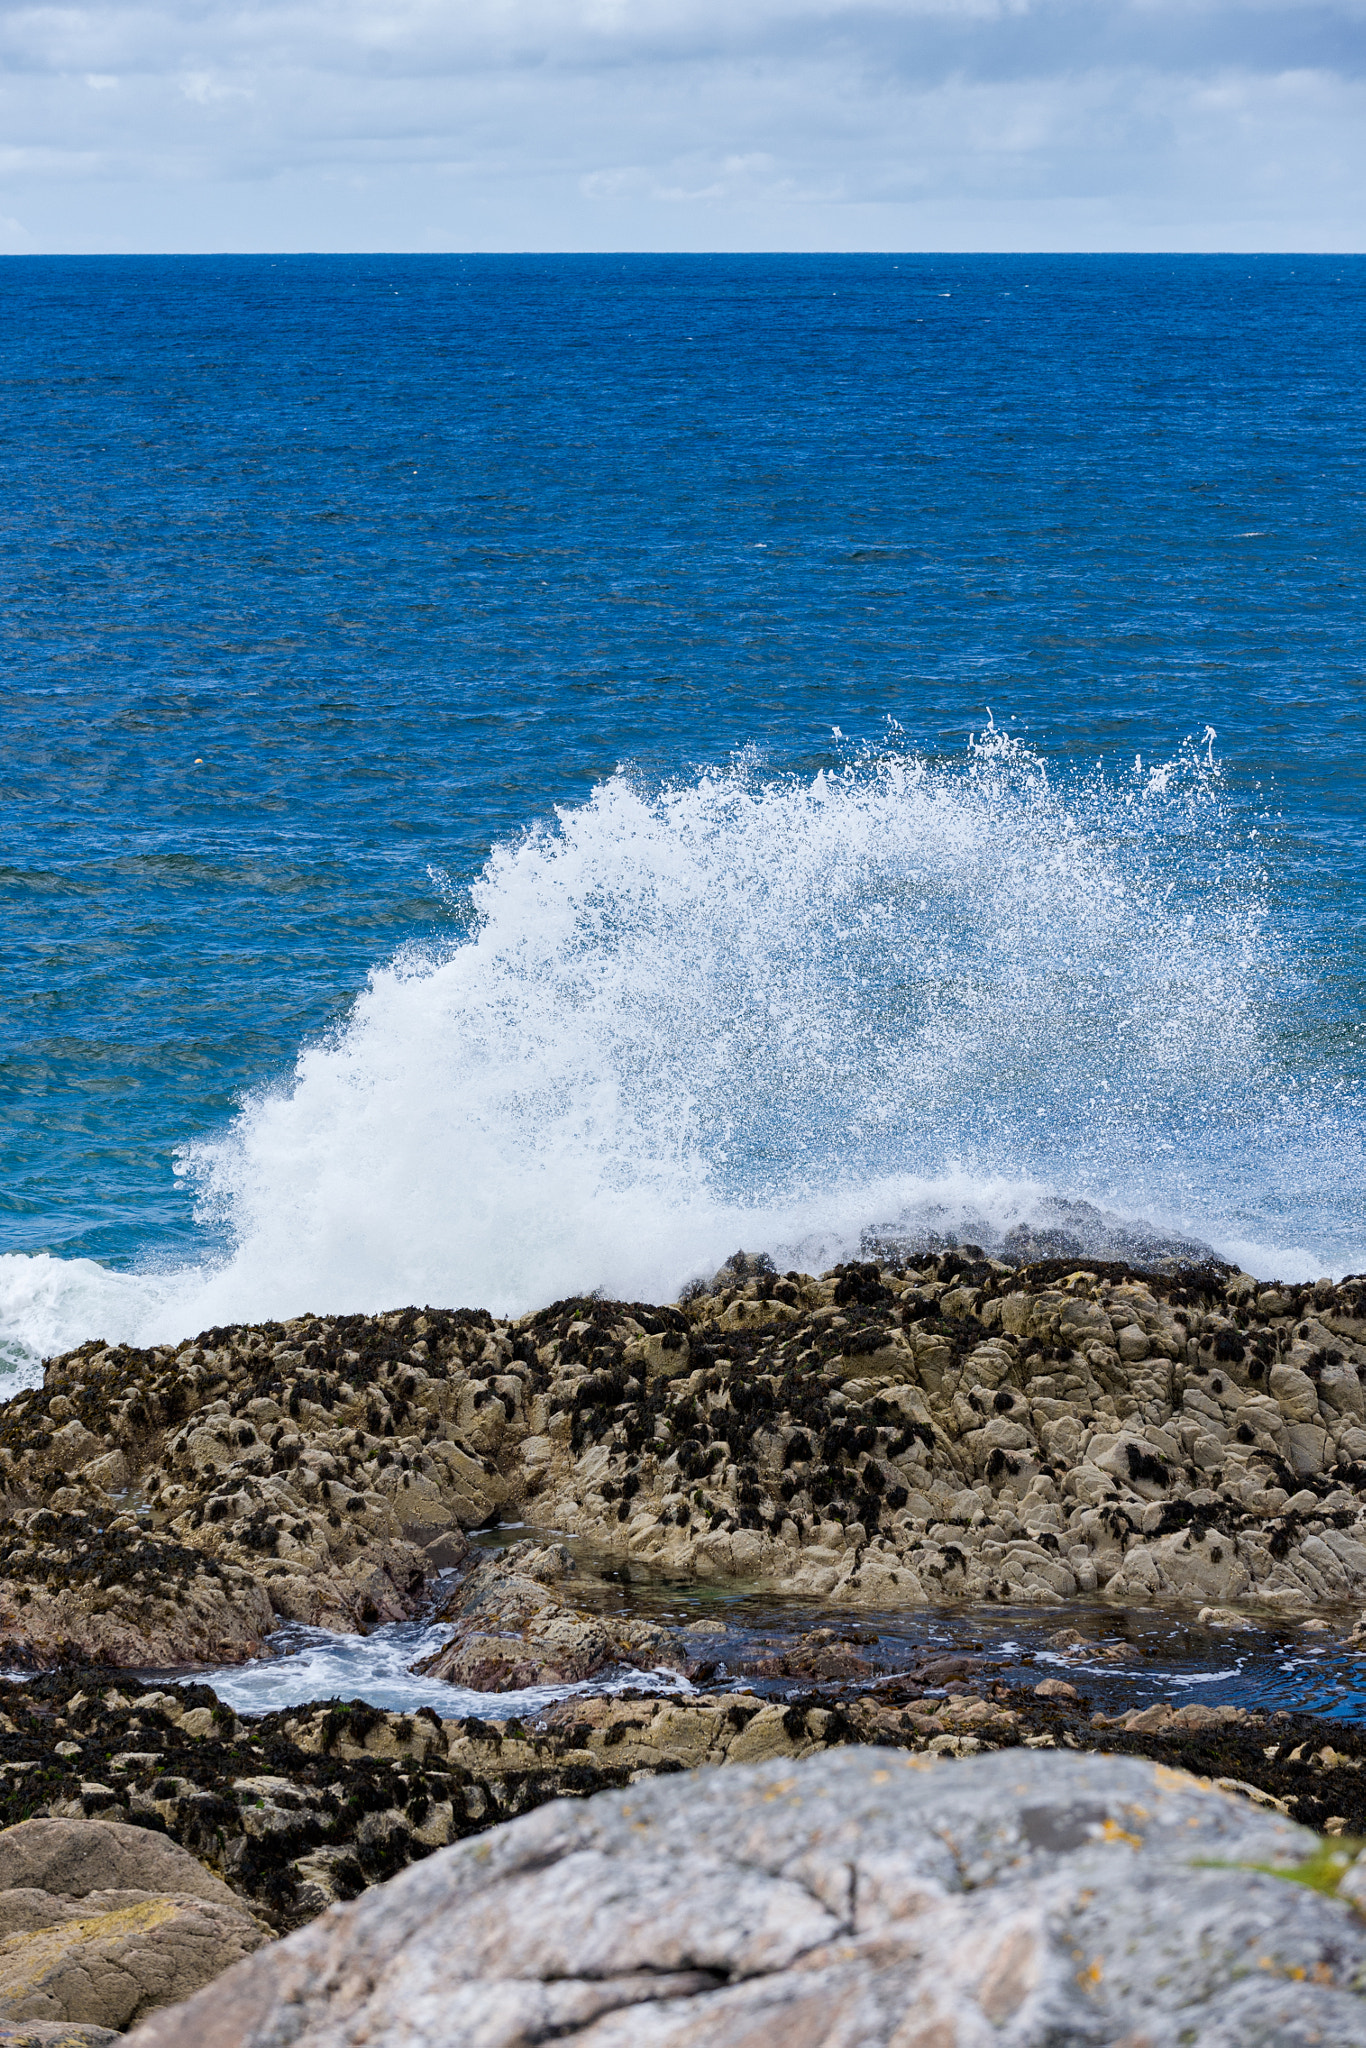 Nikon D4S + Nikon AF-S Nikkor 70-200mm F2.8G ED VR sample photo. Ocean wave breaking on the sea shore, luskentyre isle of harris, photography